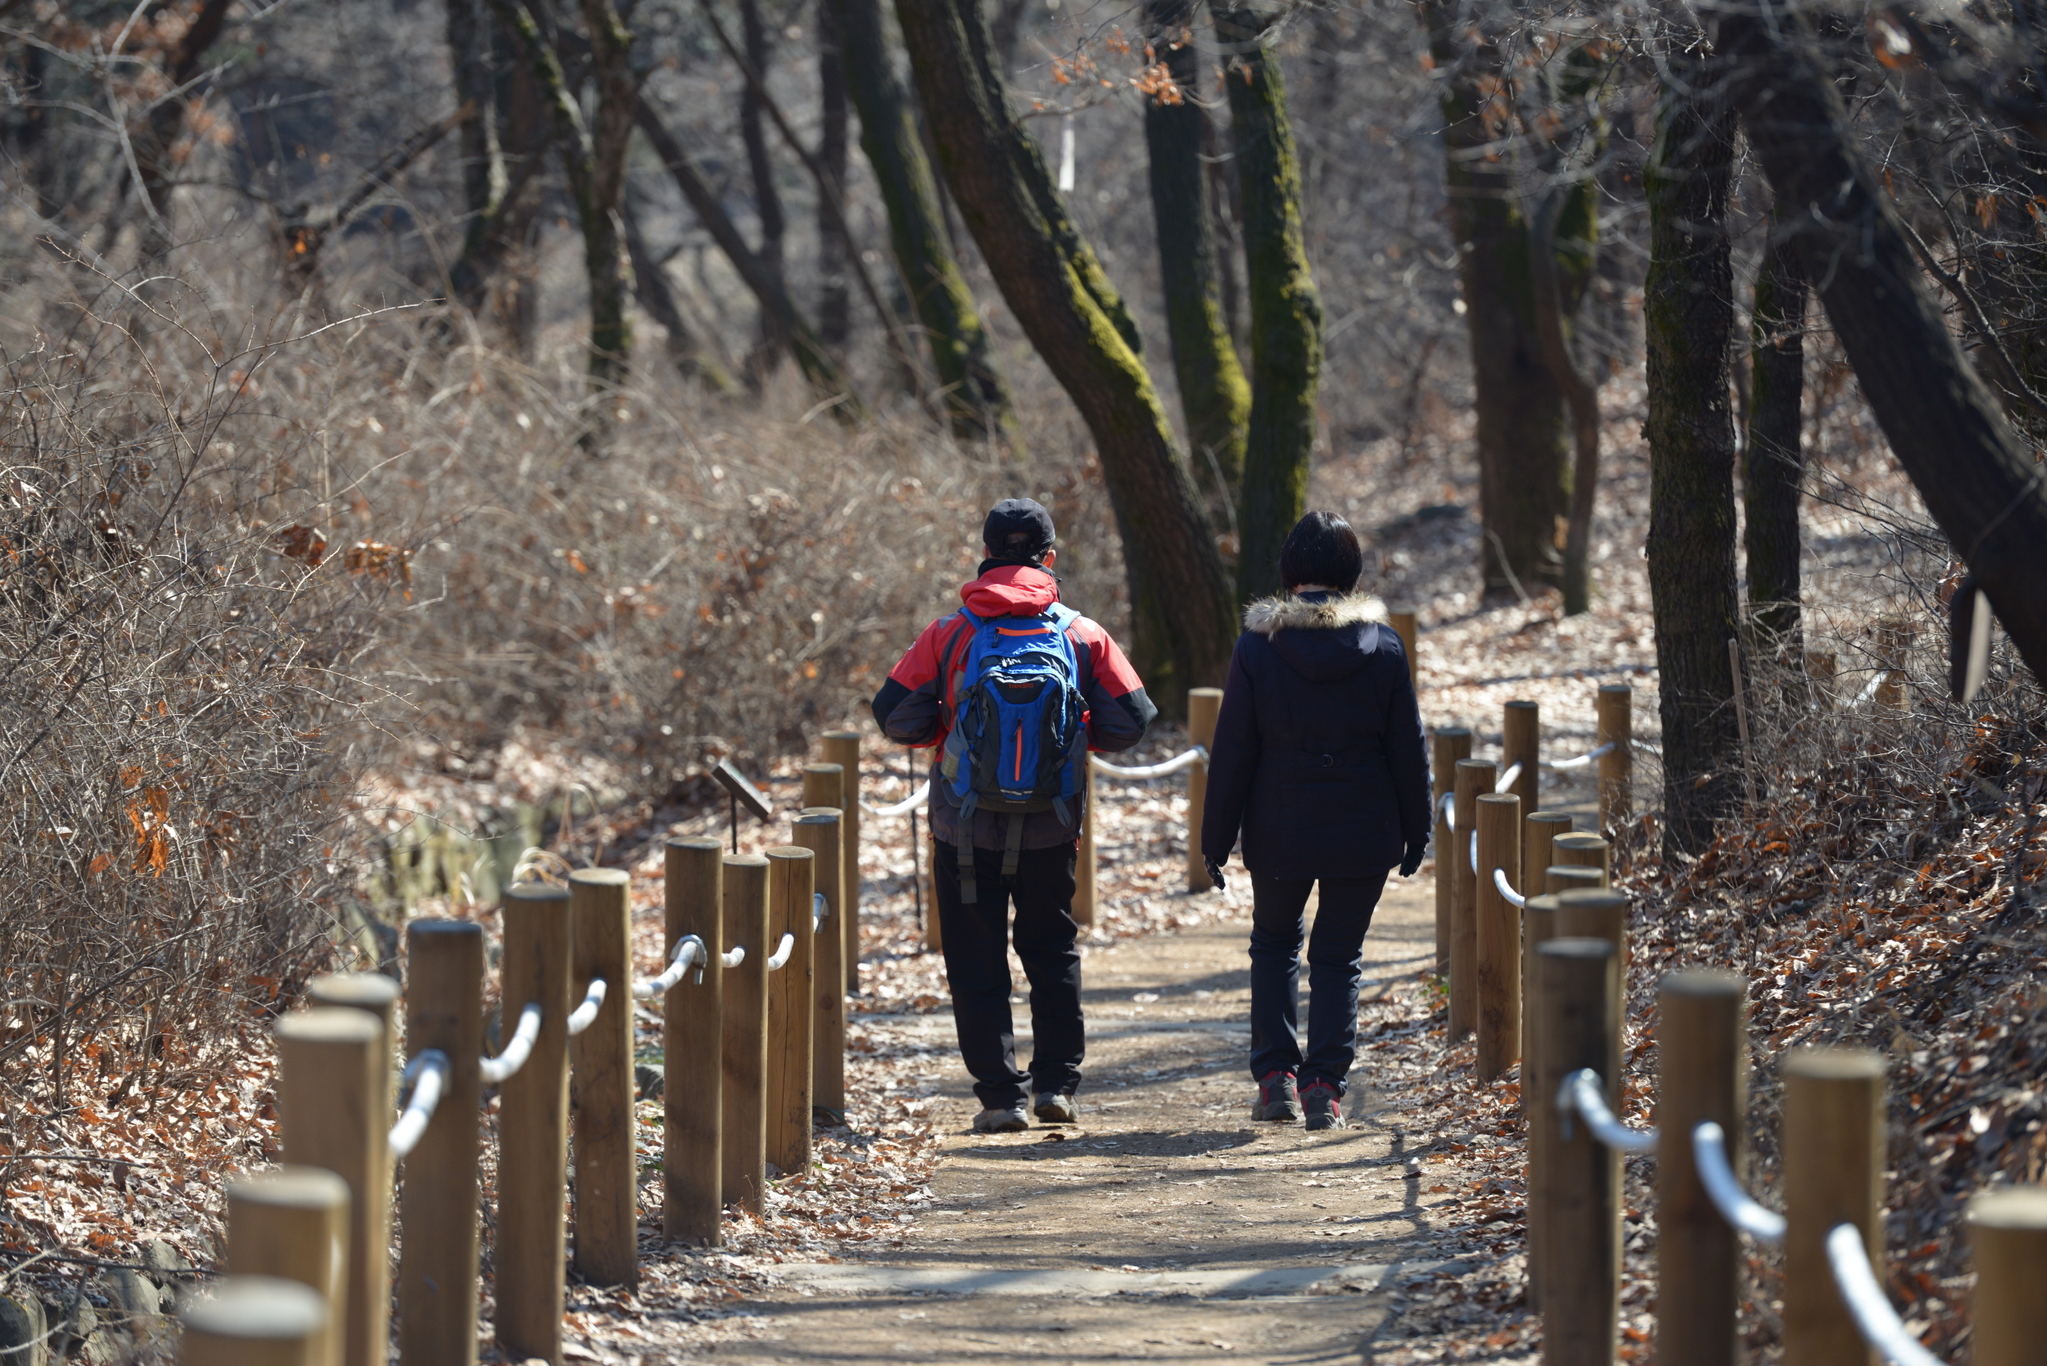 서울 강서구에 있는 강서둘레길. 1코스 개화산 숲길은 방화근린공원에서 시작해 방화근린공원에서 끝나는 순환길이다.